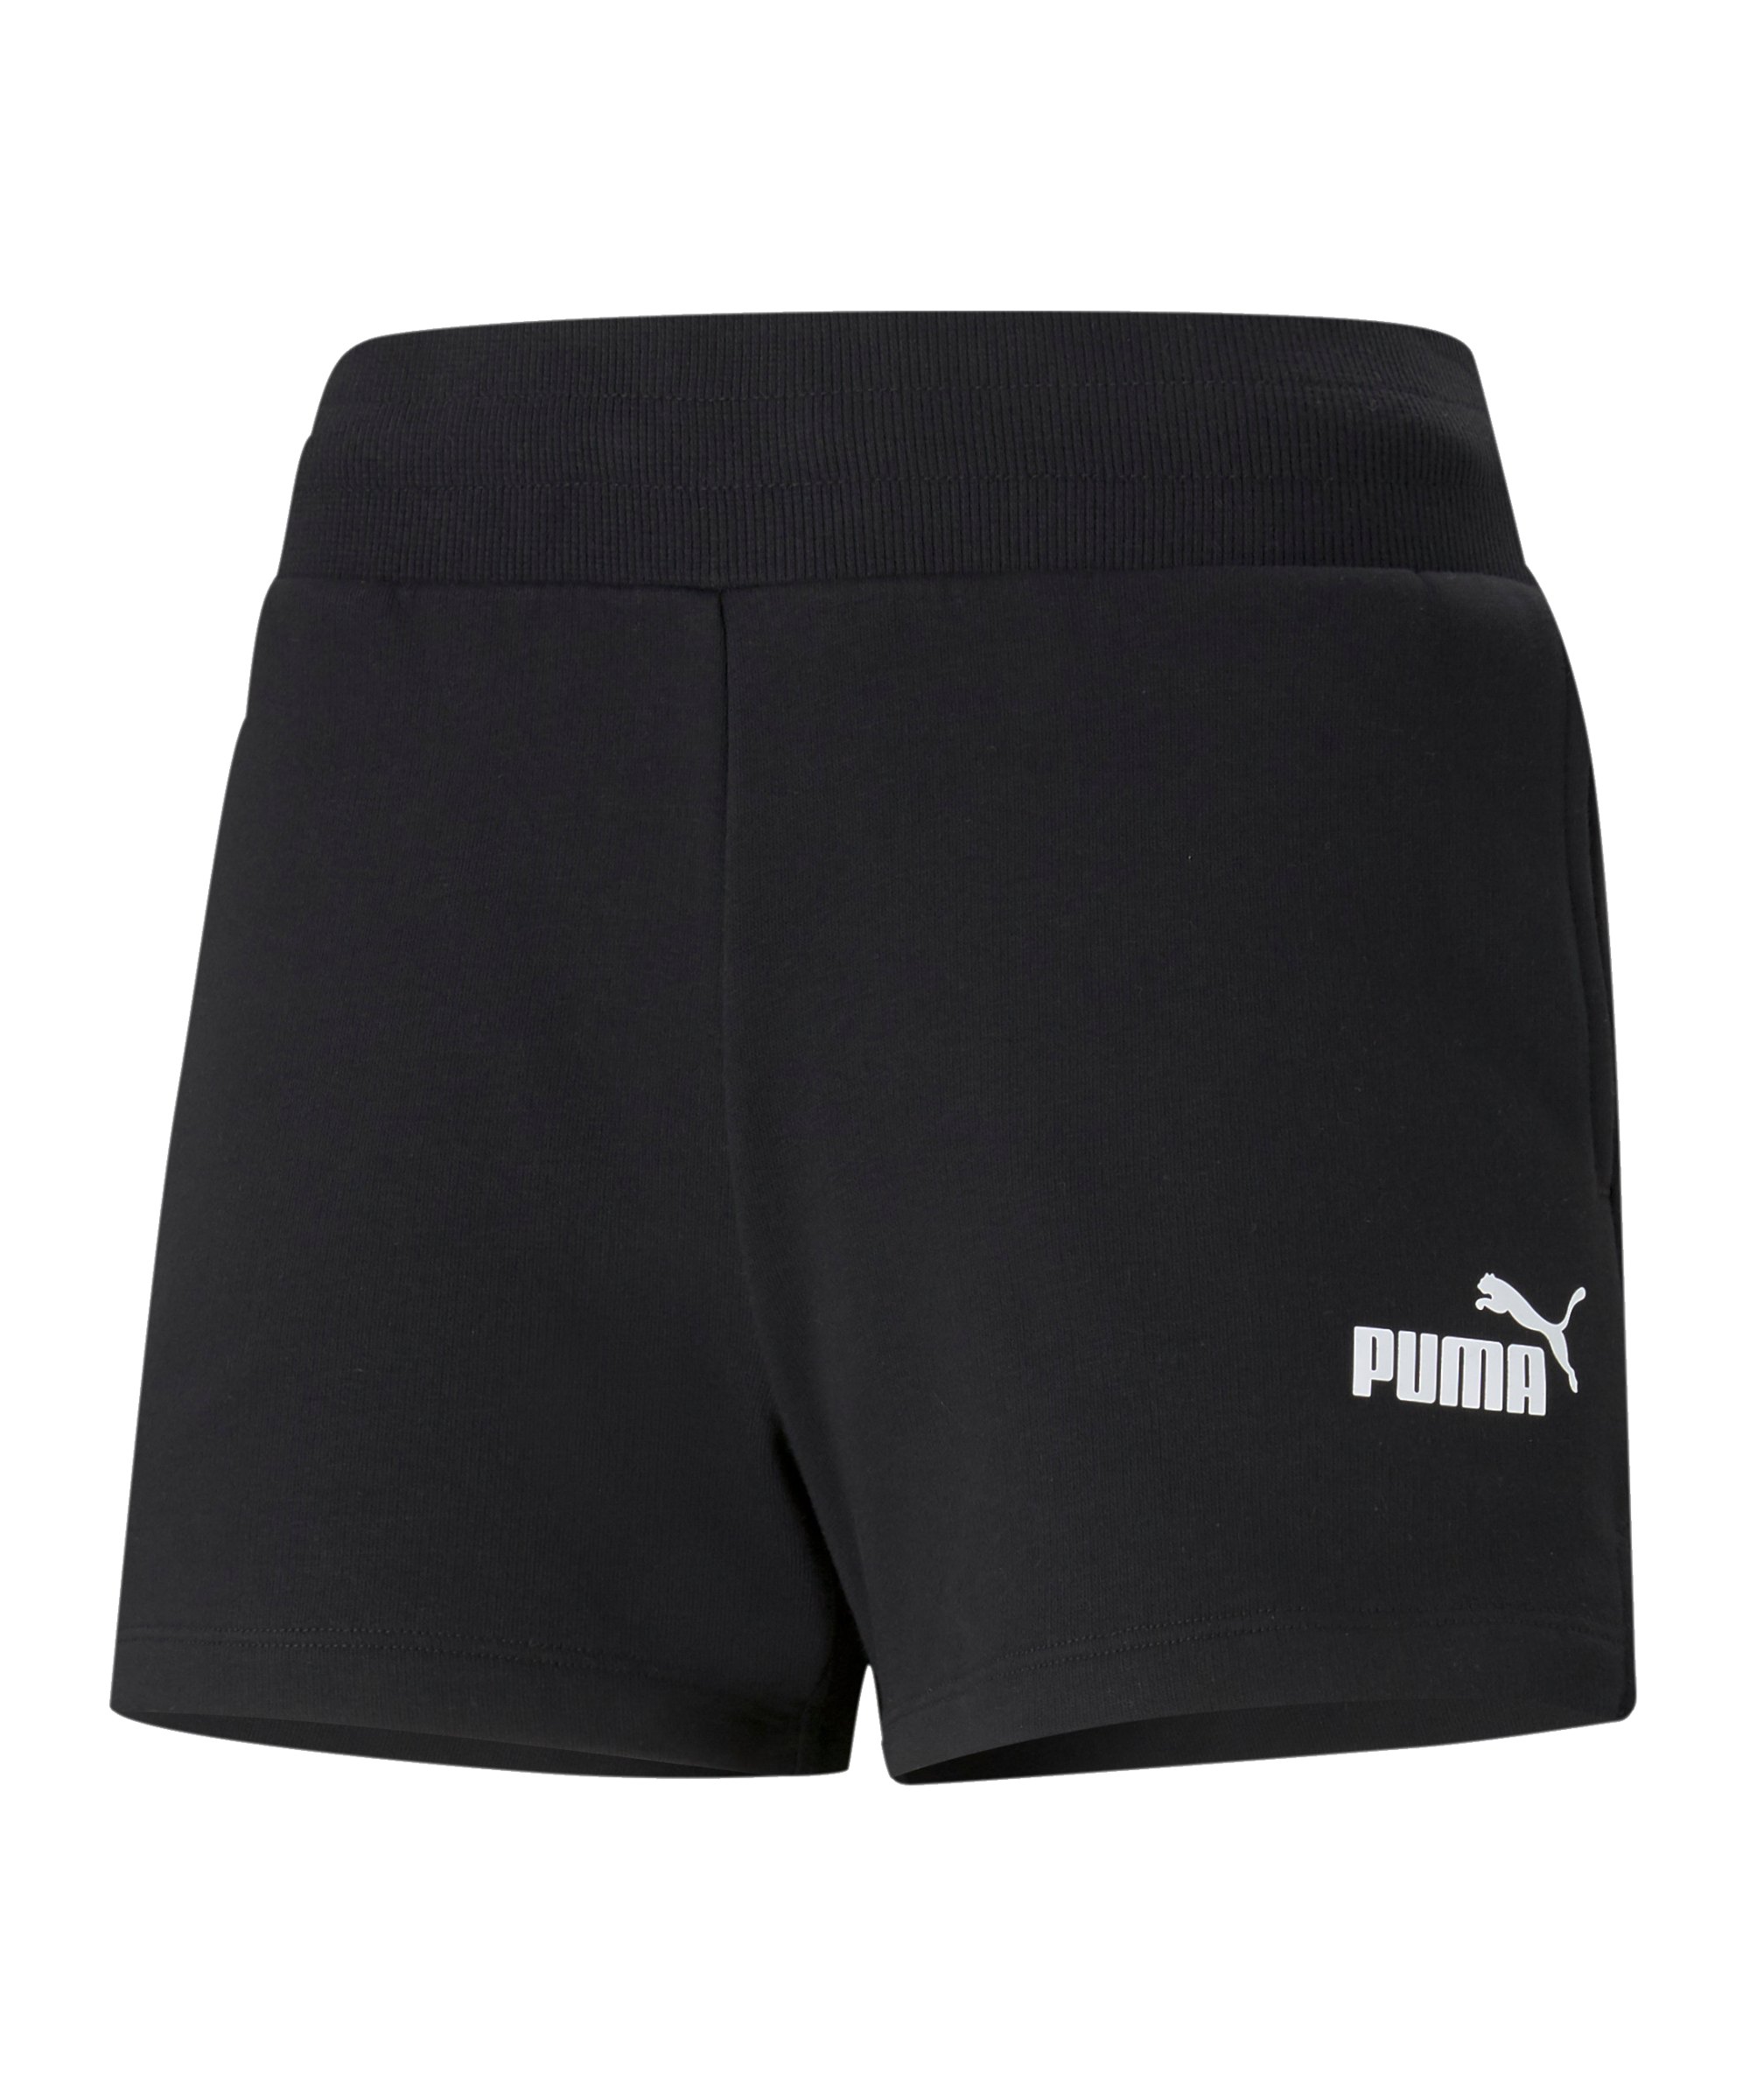 PUMA Essentials 4inch Short Damen Schwarz F01 - schwarz